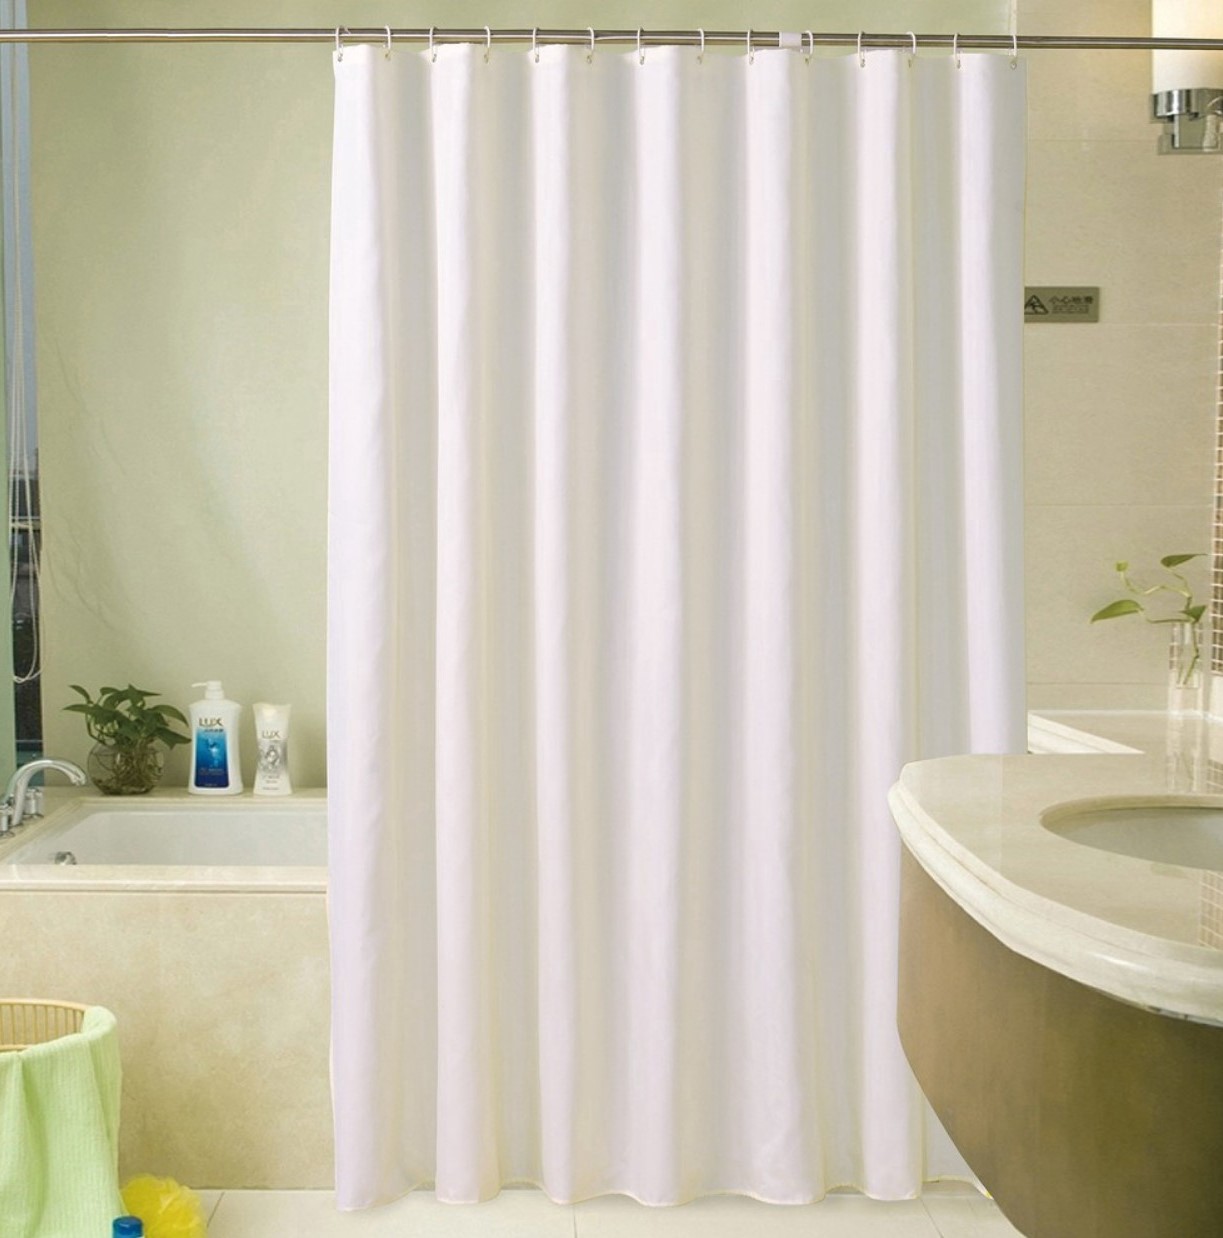 Rèm phòng tắm không thấm nước: Với rèm phòng tắm không thấm nước, bạn sẽ hoàn toàn yên tâm tắm mà không lo bị tràn nước. Vật liệu chất lượng cao và bền bỉ cùng khả năng chống thấm nước đáng tin cậy sẽ làm bạn hài lòng.